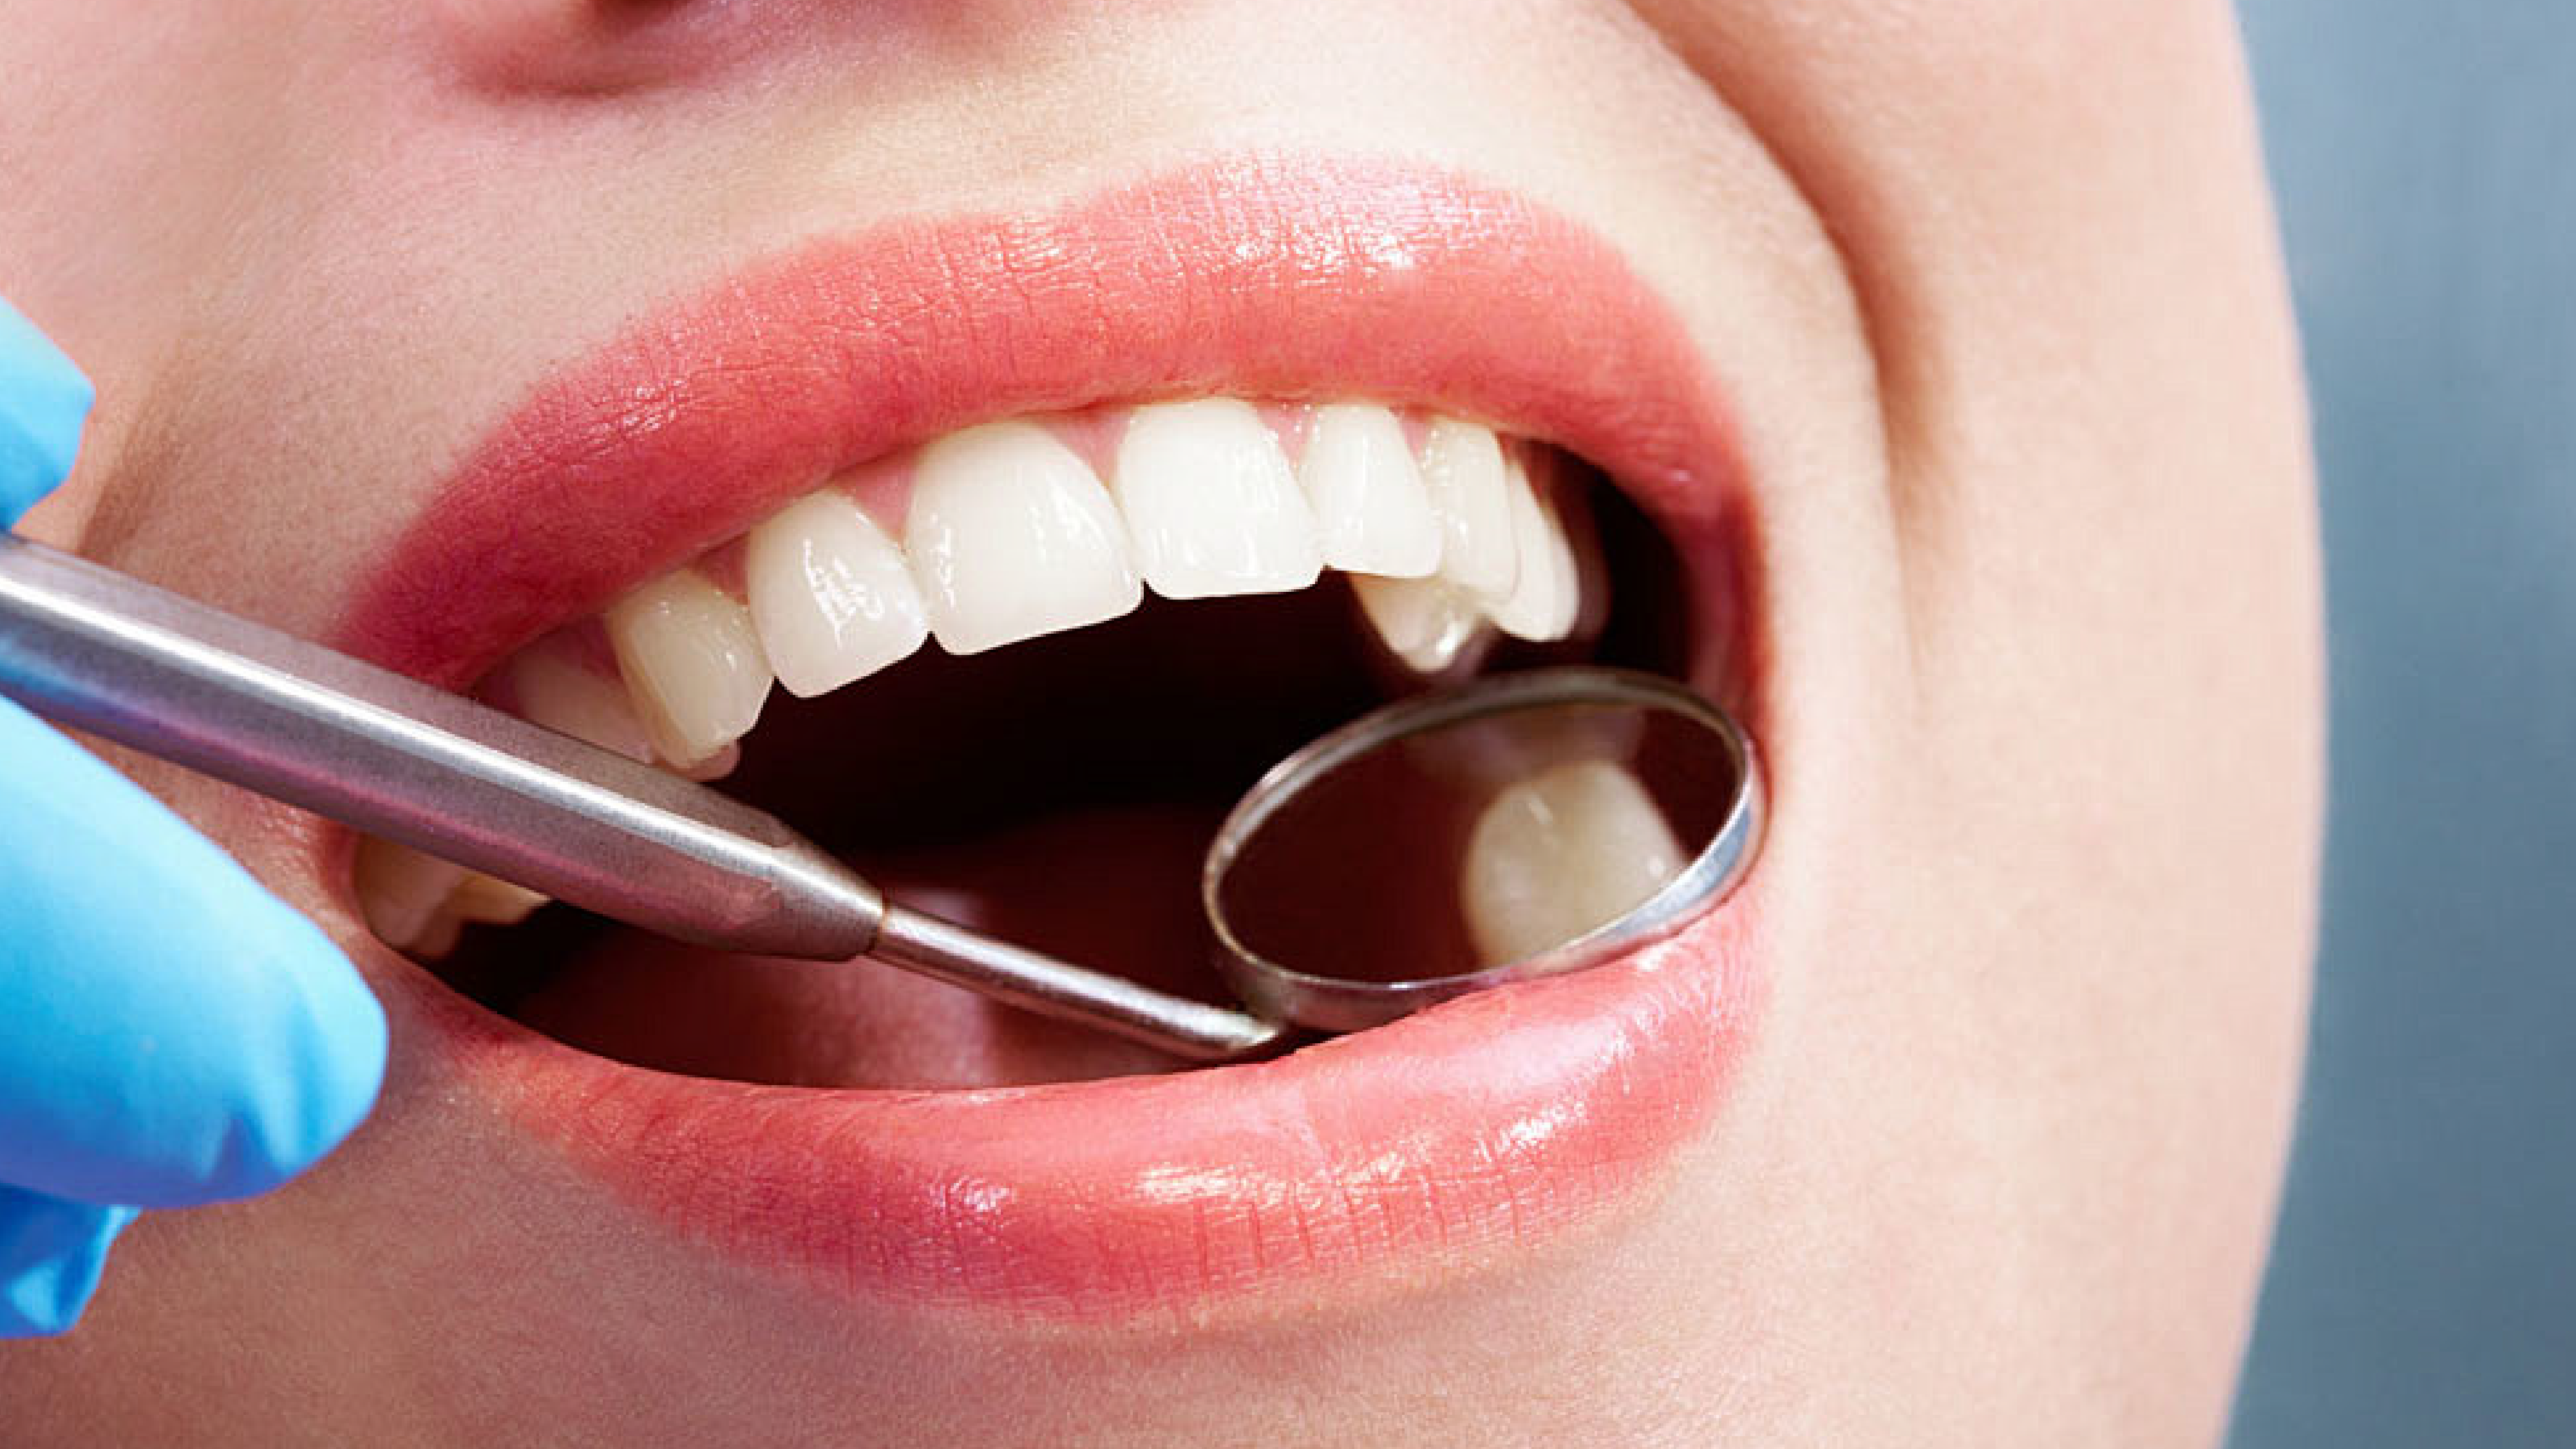 Bác sĩ sử dụng gương nha để thăm khám xác định vị trí răng cần nhổ